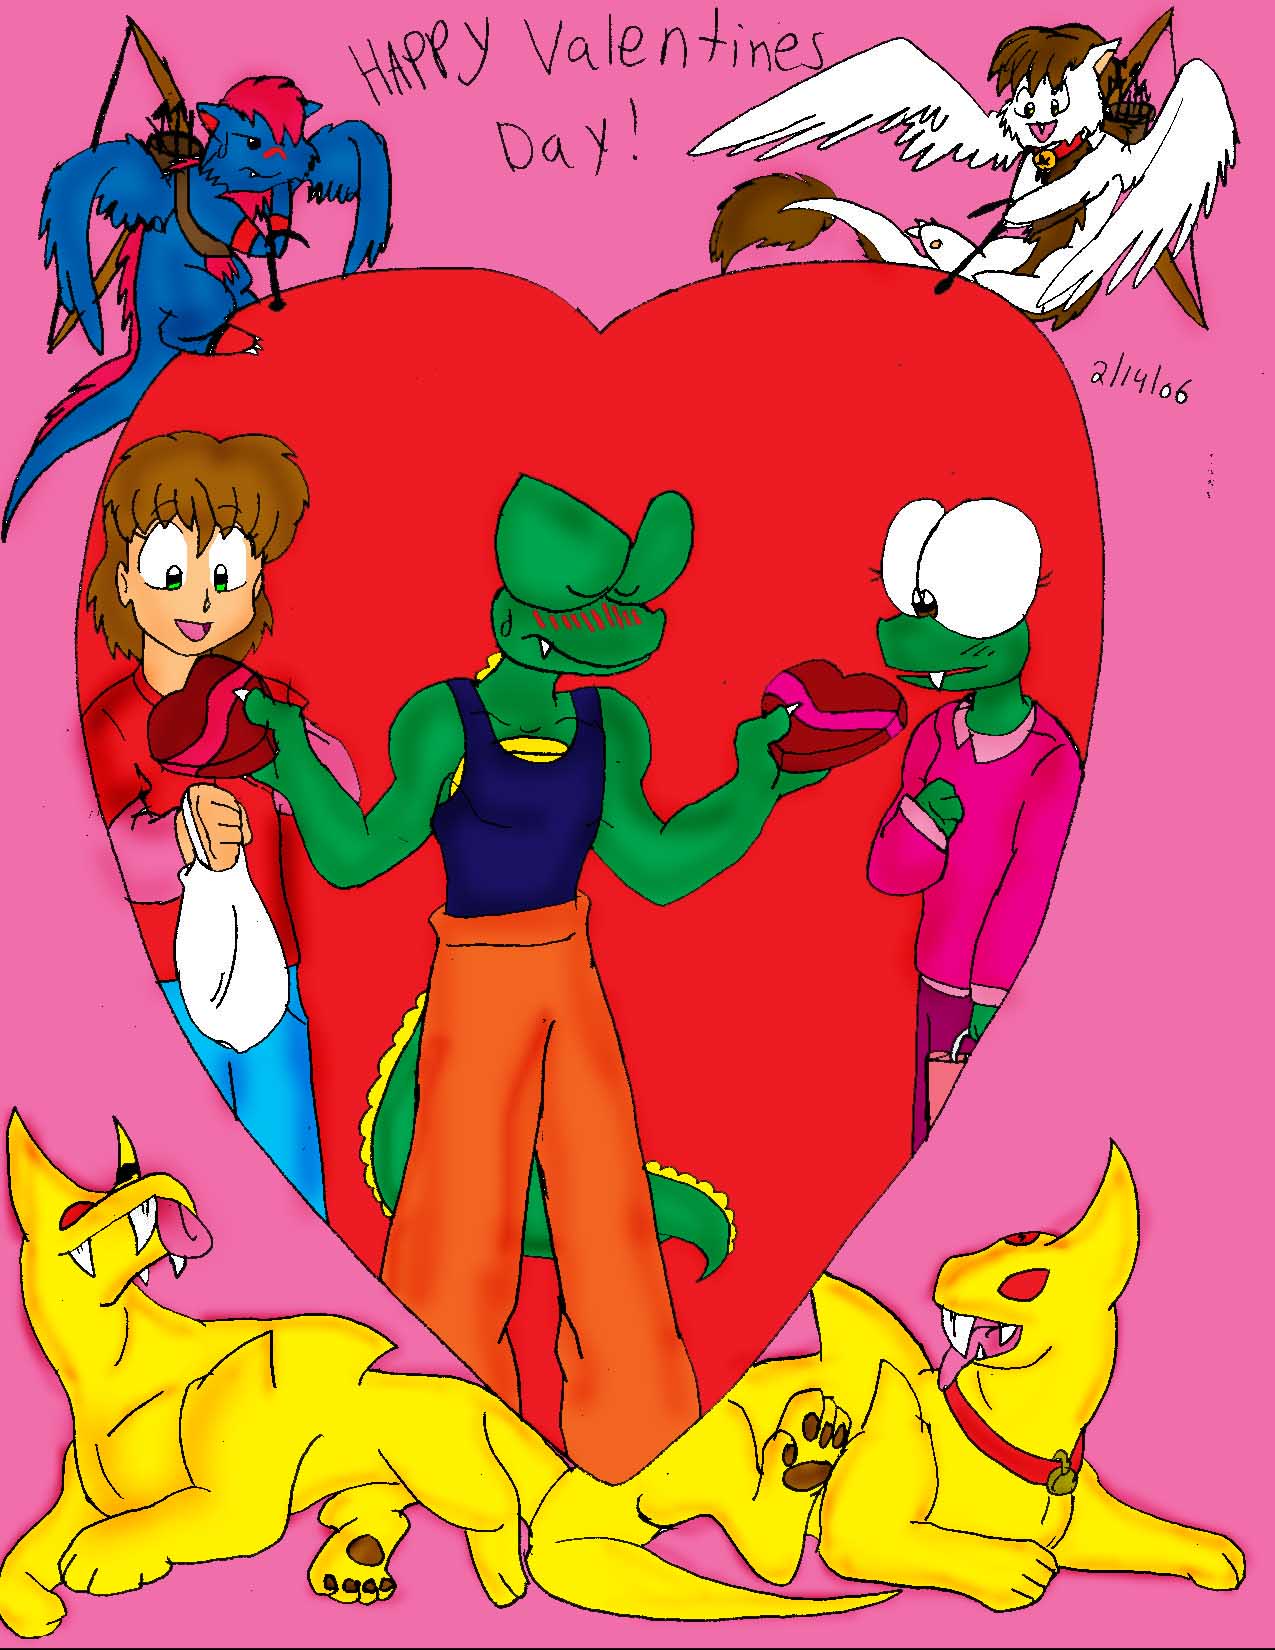 Happy Valentines Day! by crocdragon89